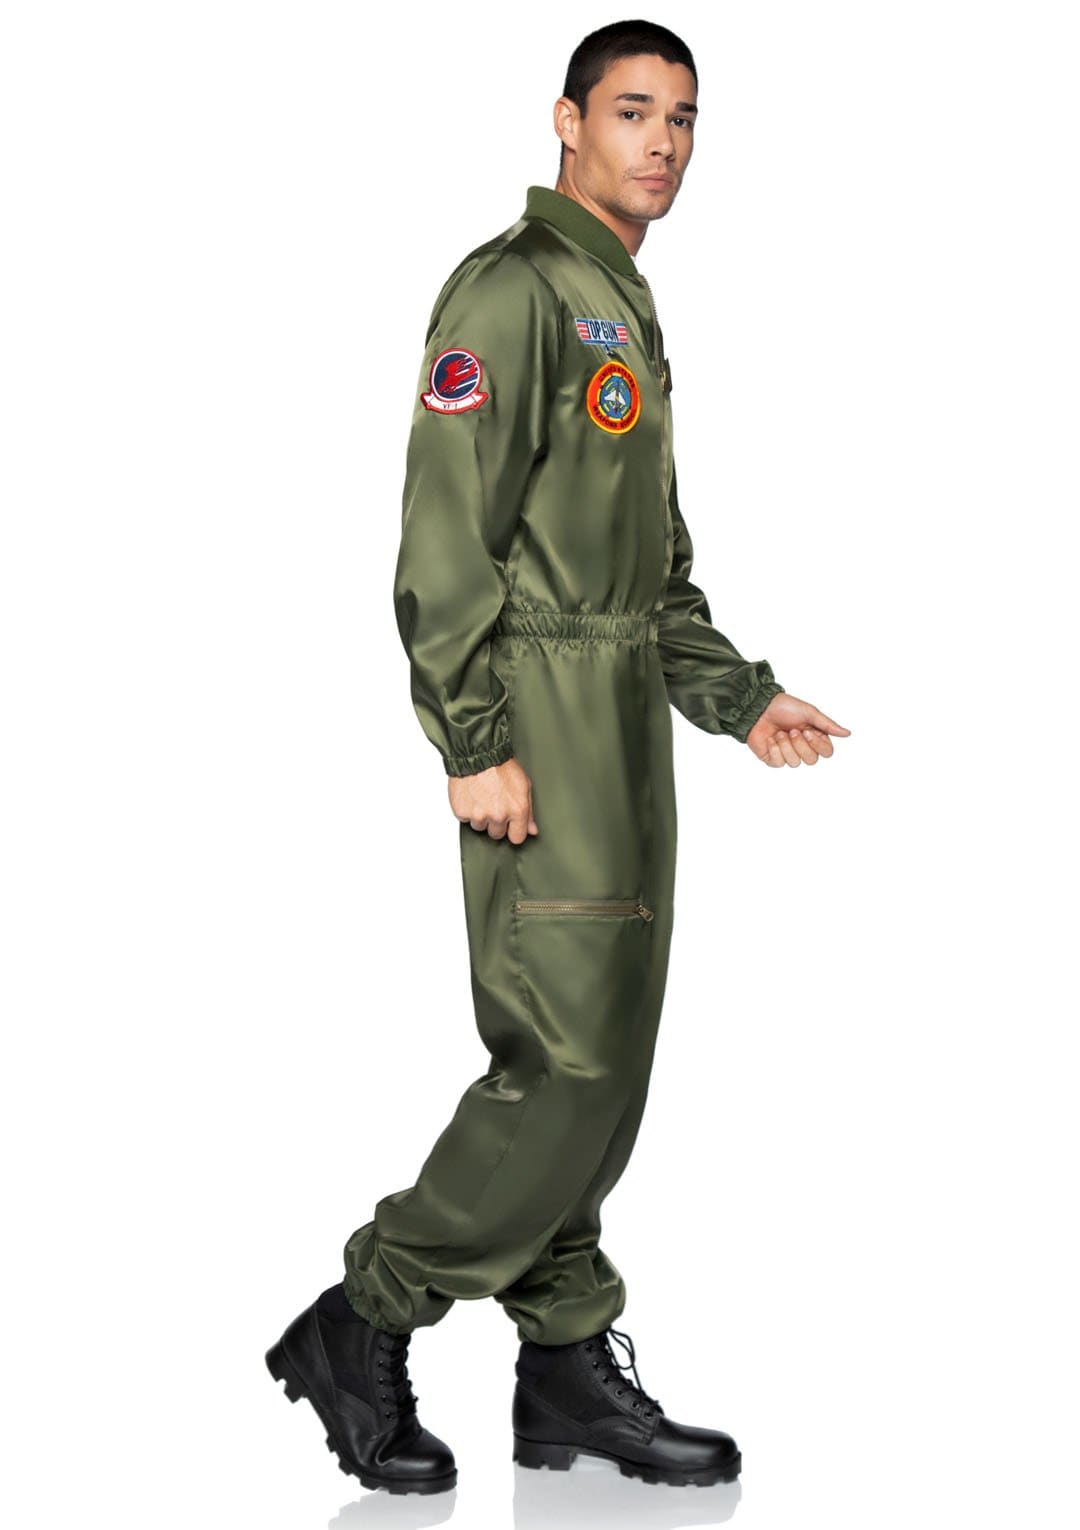 Top Gun Parachute Flight Suit with Maverick and Goose Name Badges